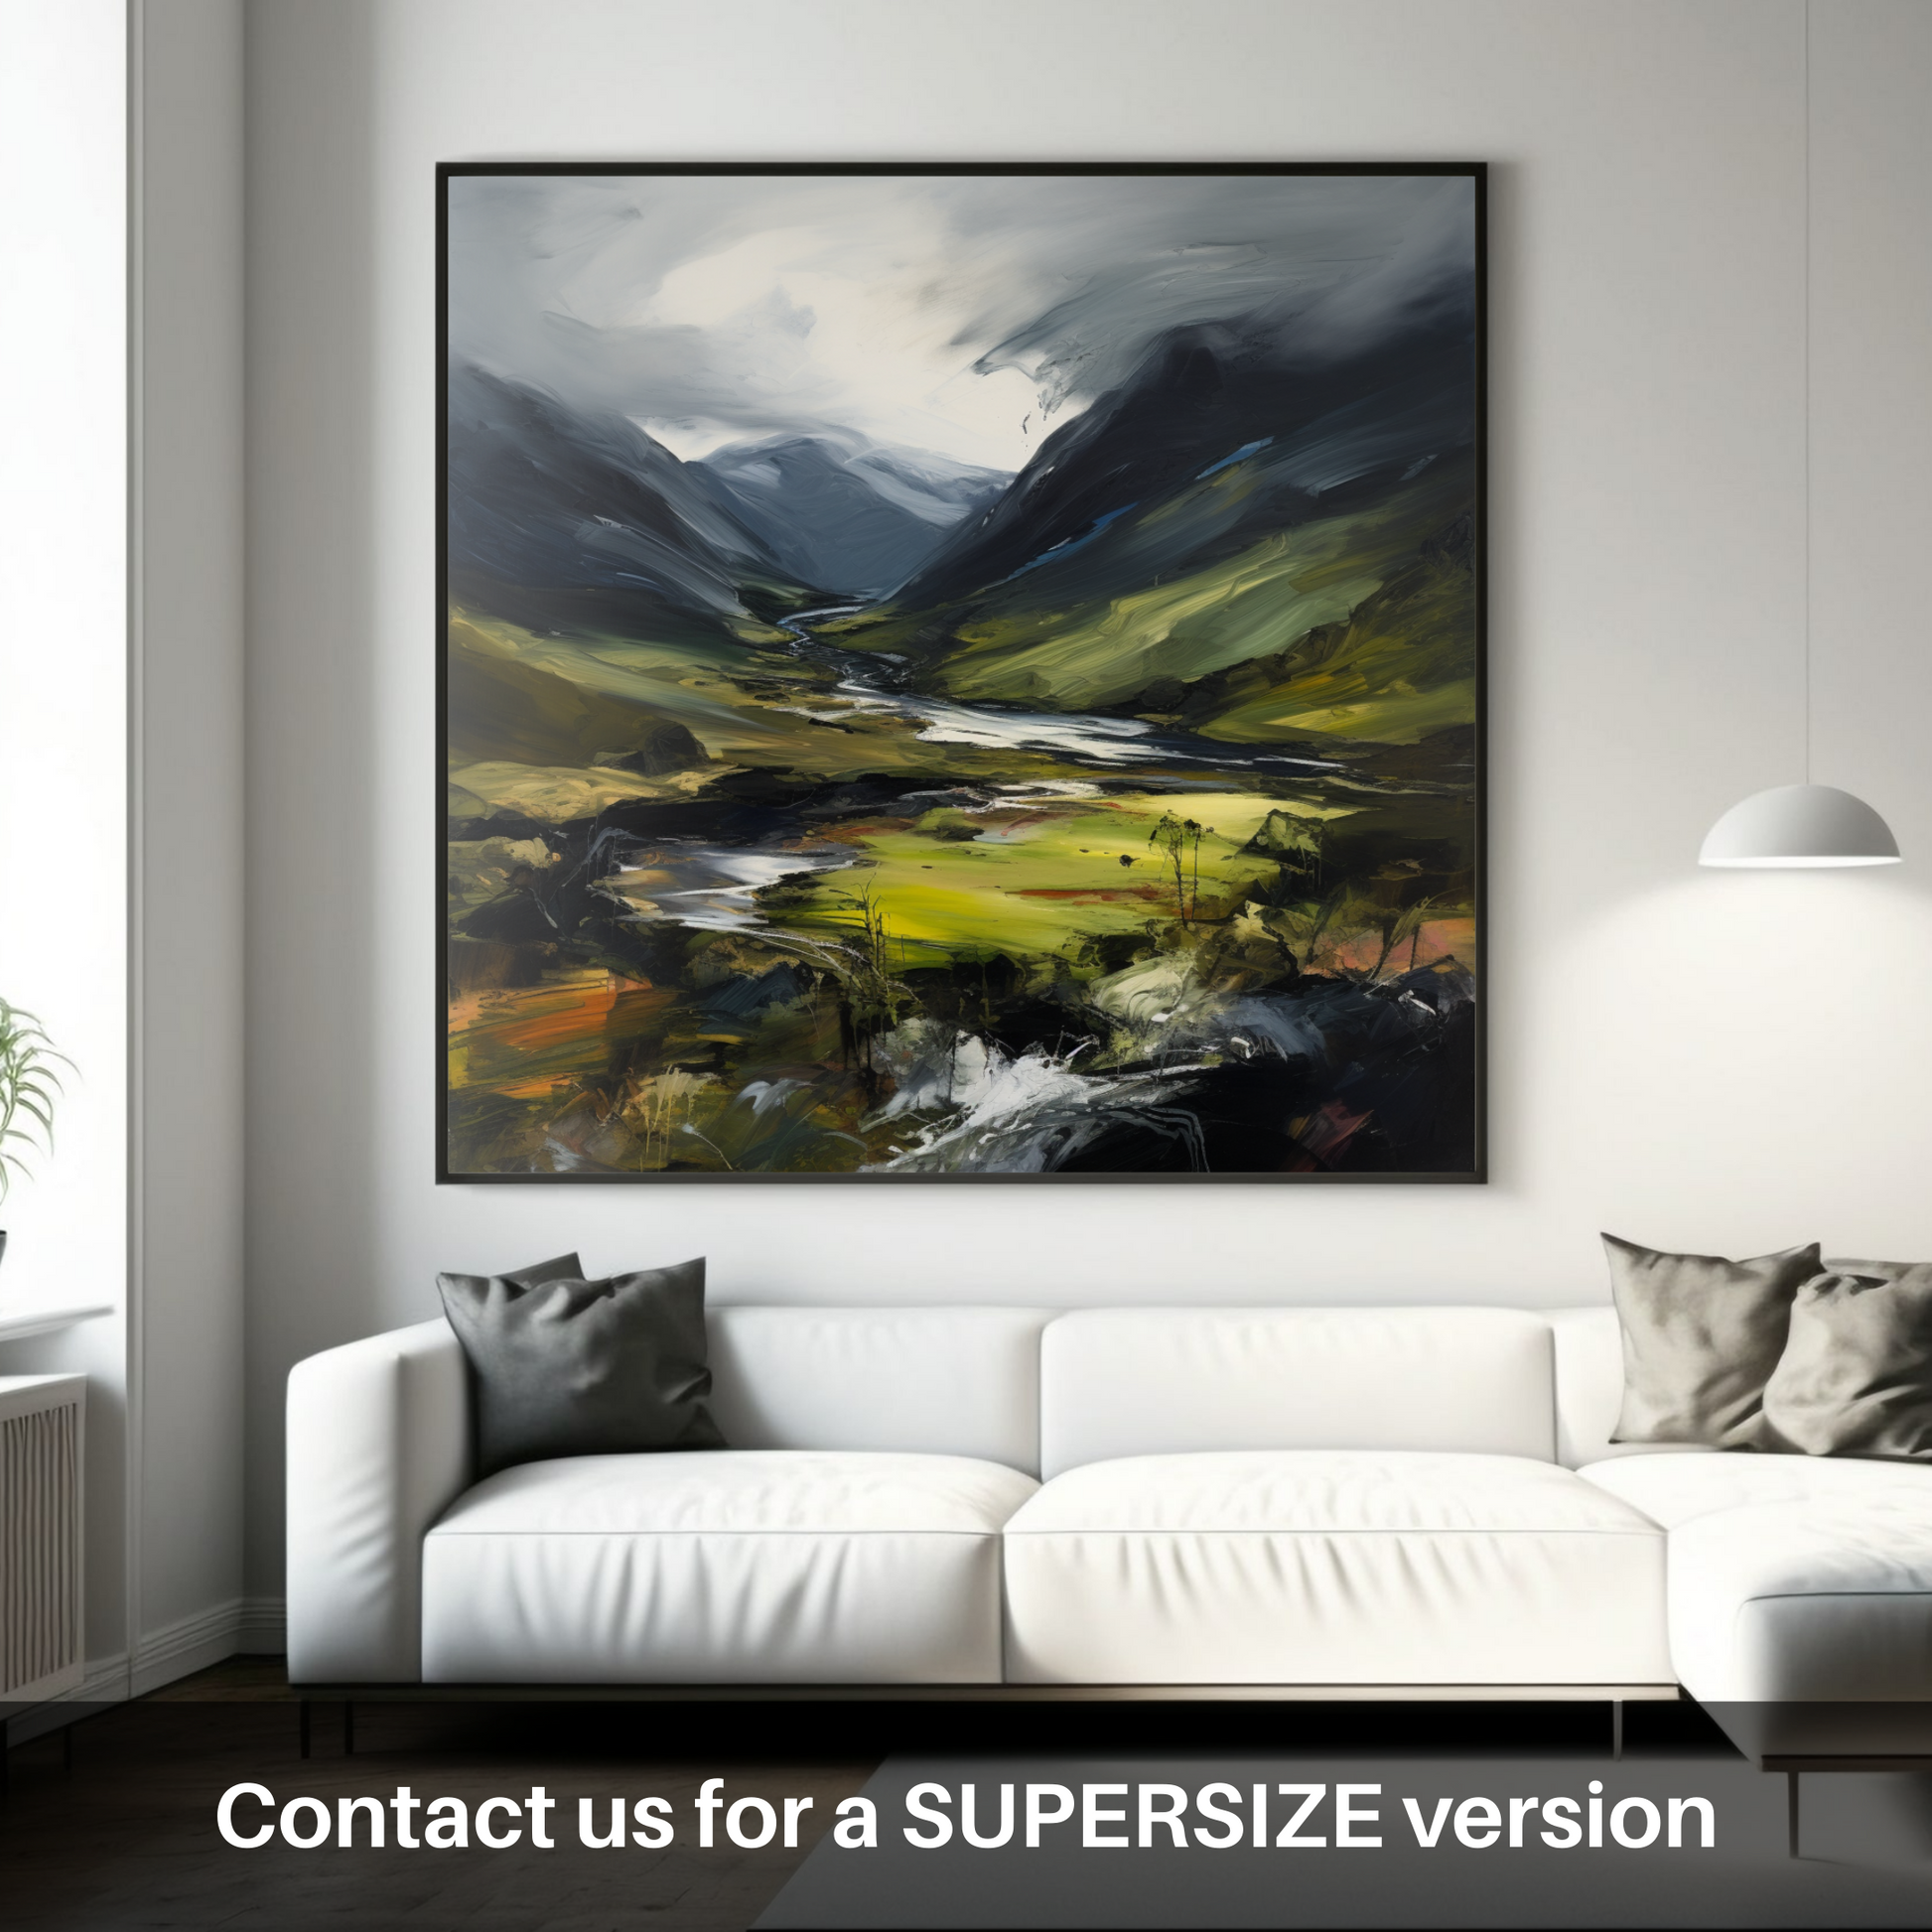 Huge supersize print of Glen Strathfarrar, Highlands